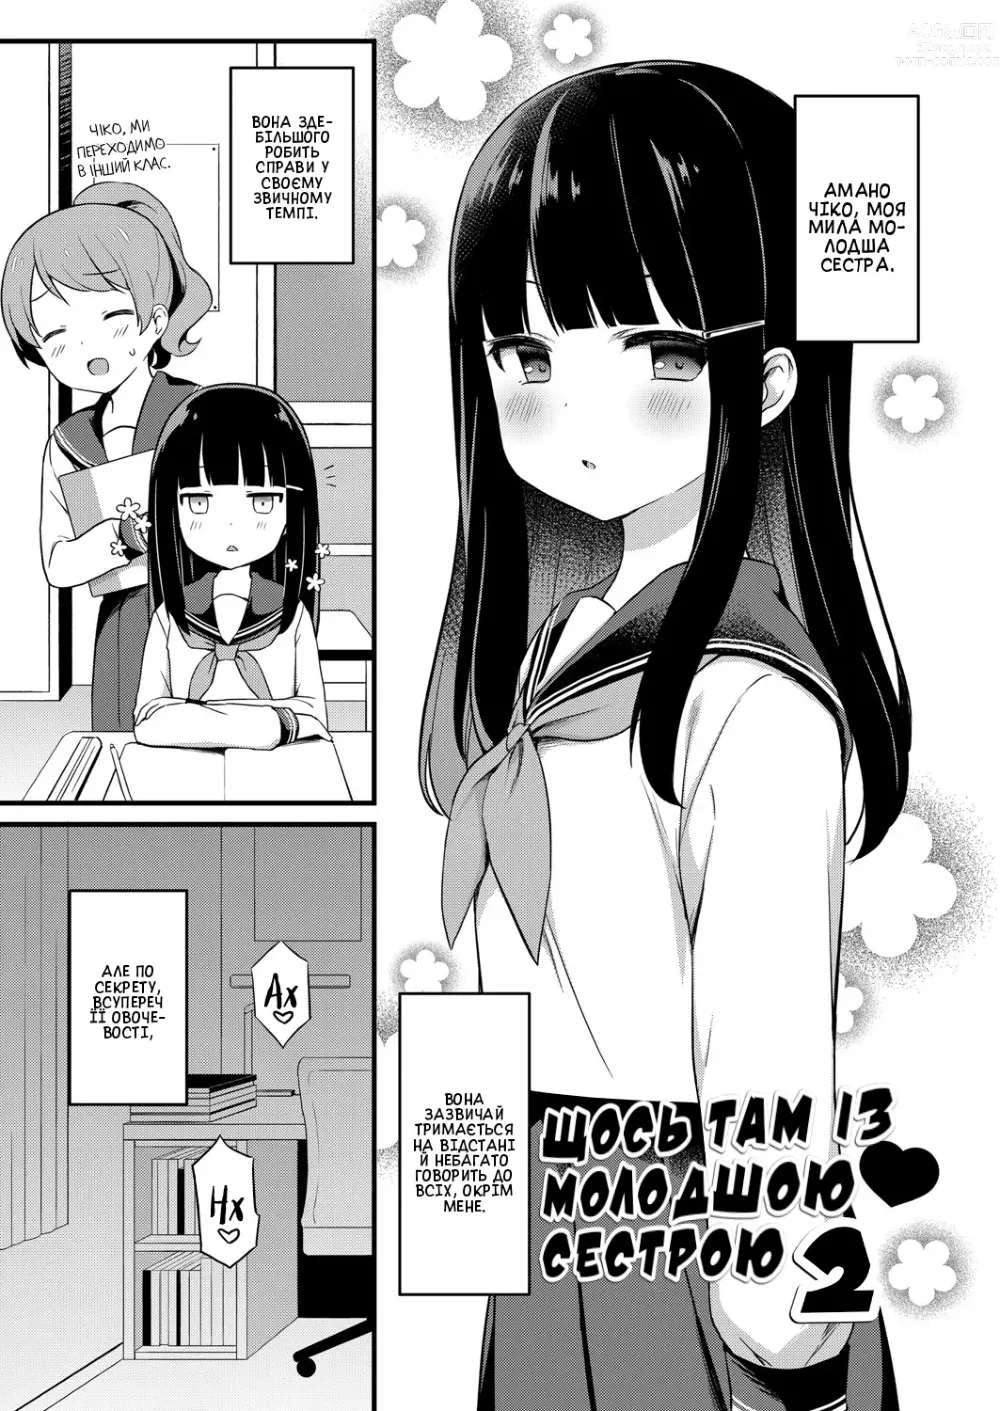 Page 1 of doujinshi Щось там із молодшою сестрою #2